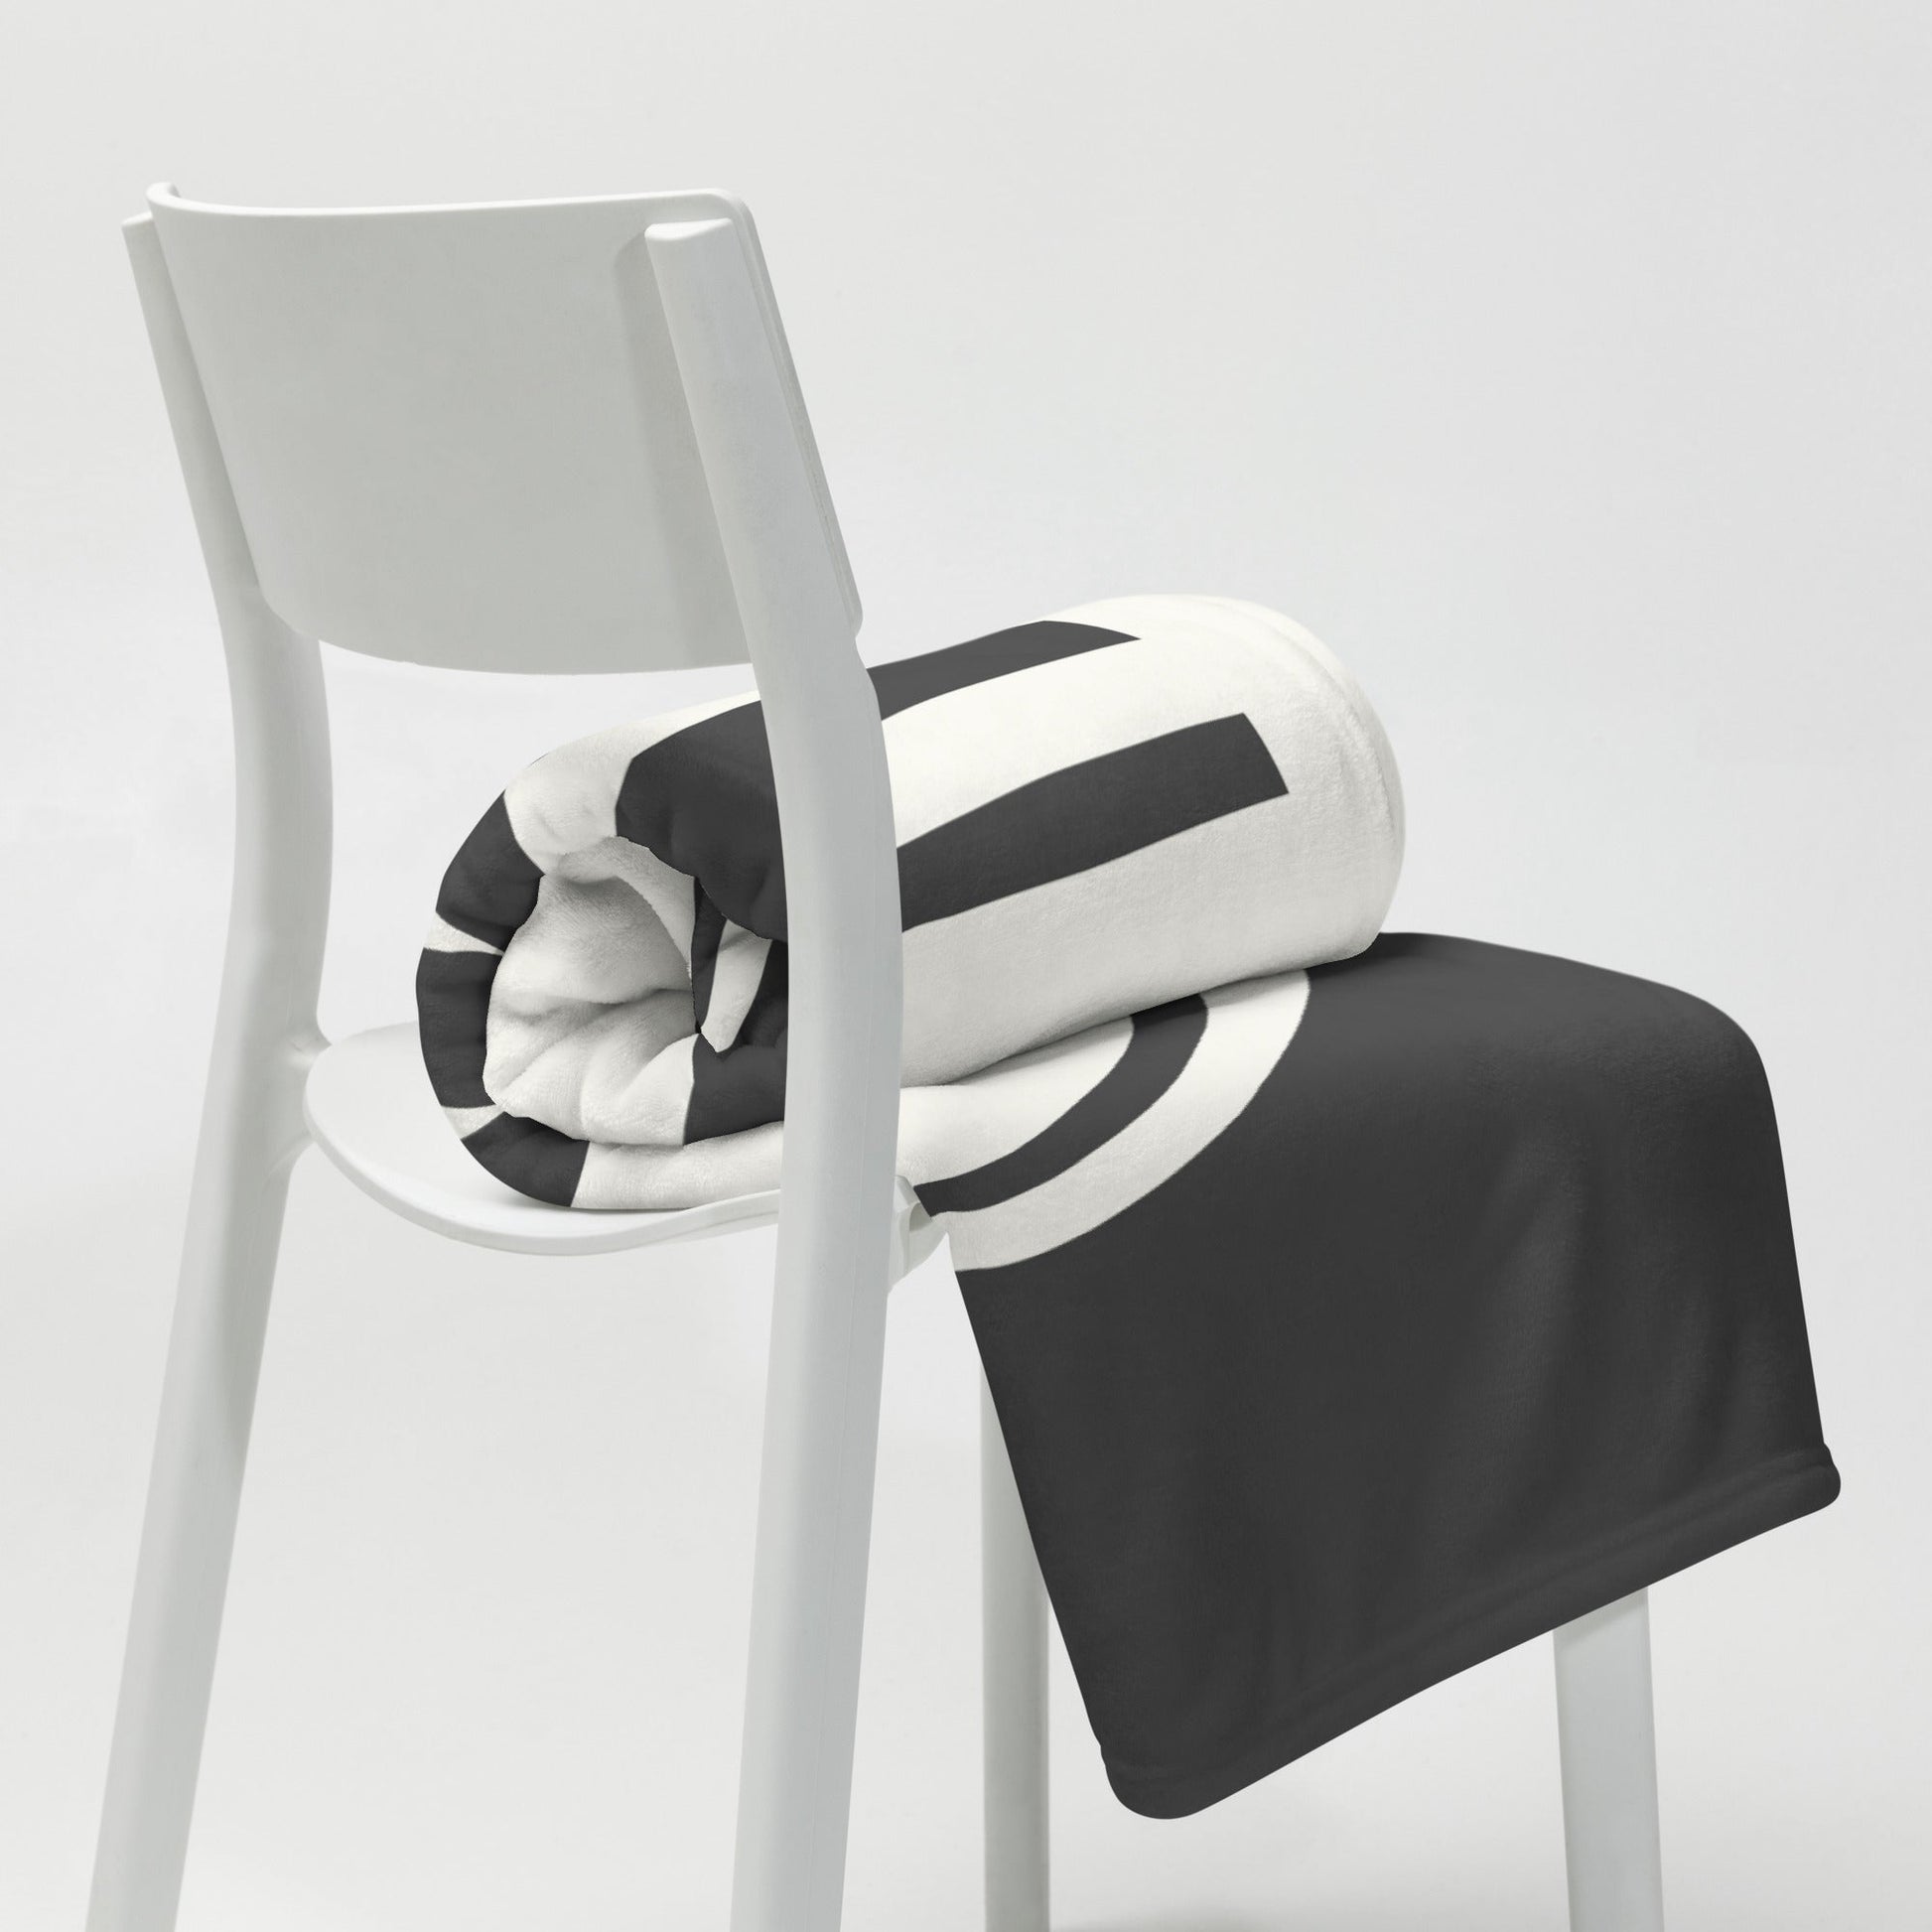 Unique Travel Gift Throw Blanket - White Oval • YXE Saskatoon • YHM Designs - Image 03